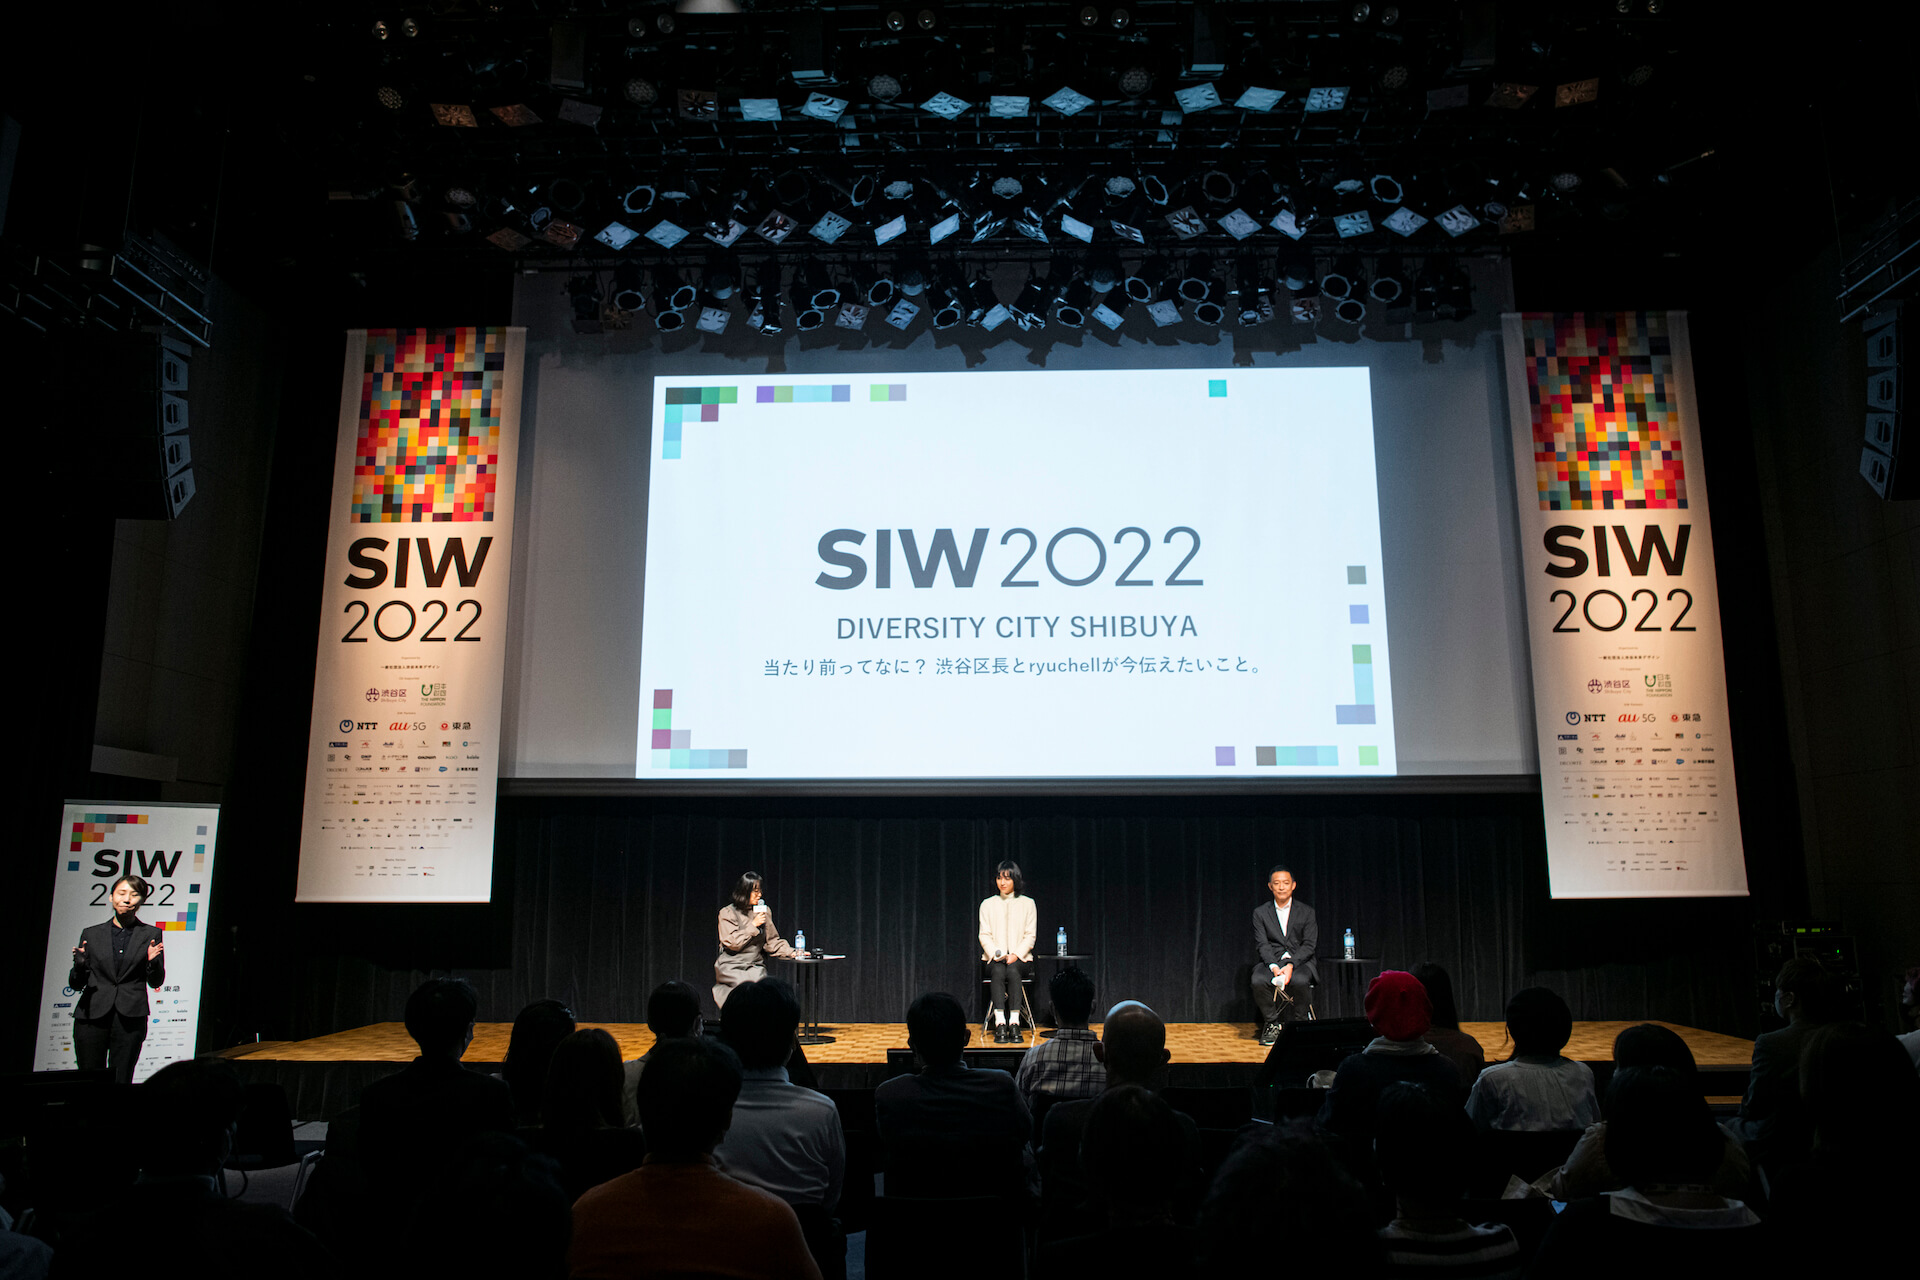 成田 悠輔、ryuchellなど265名が登壇した80プログラムのアーカイブを無料公開中！渋谷アイデア会議「SIW2022」が延べ13万人が参加で閉幕 culture221116-social-innovation-week-shibuya-02